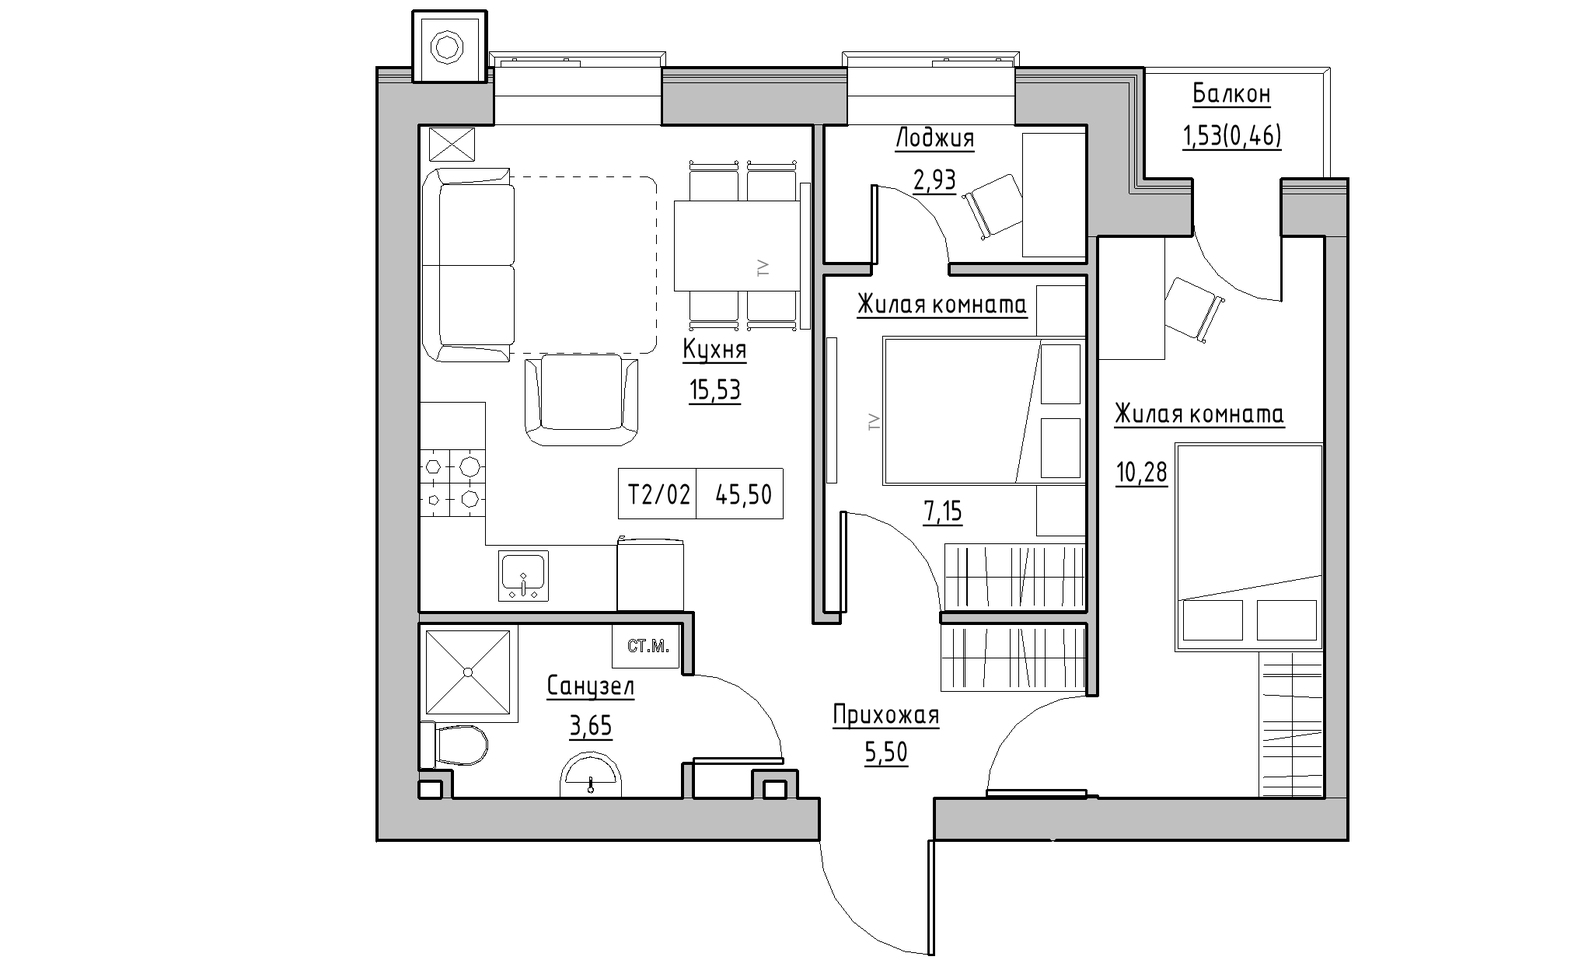 Планировка 2-к квартира площей 45.5м2, KS-014-04/0008.